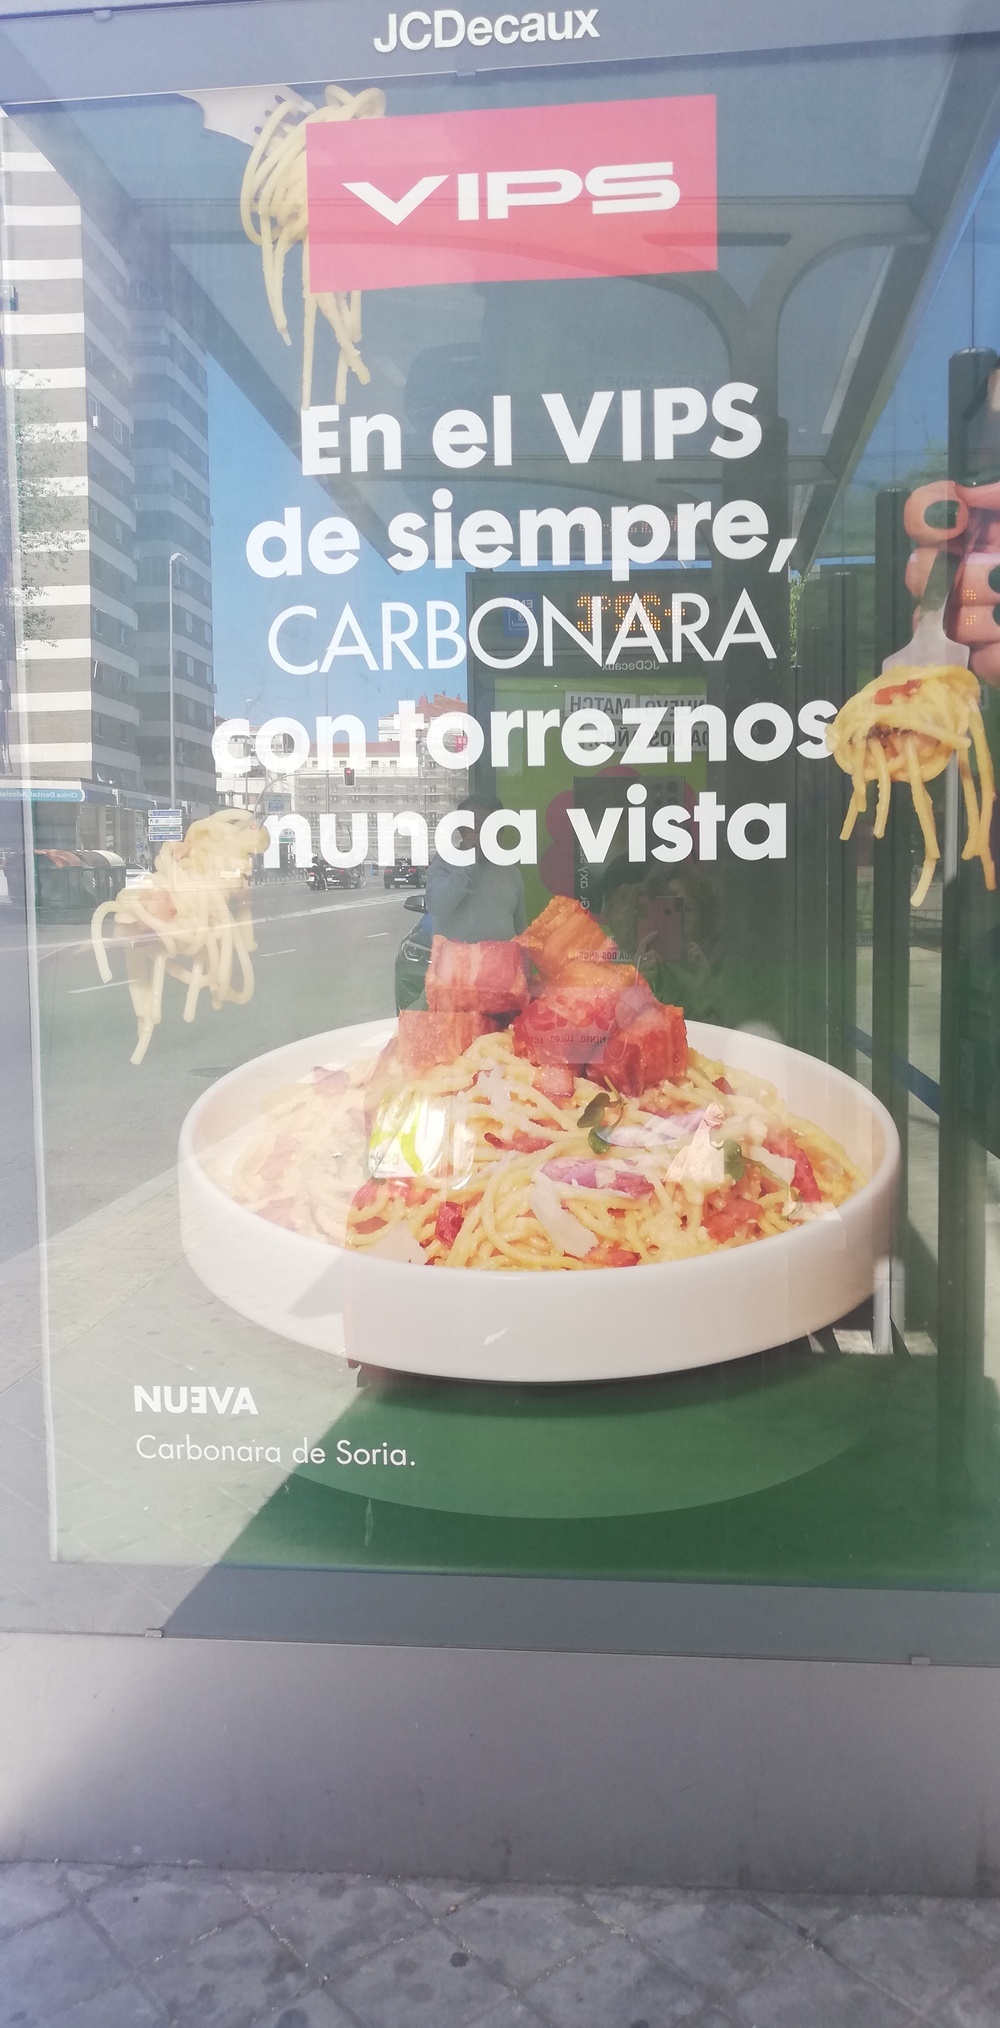 La parada de bus más soriana que abre el apetito en Madrid